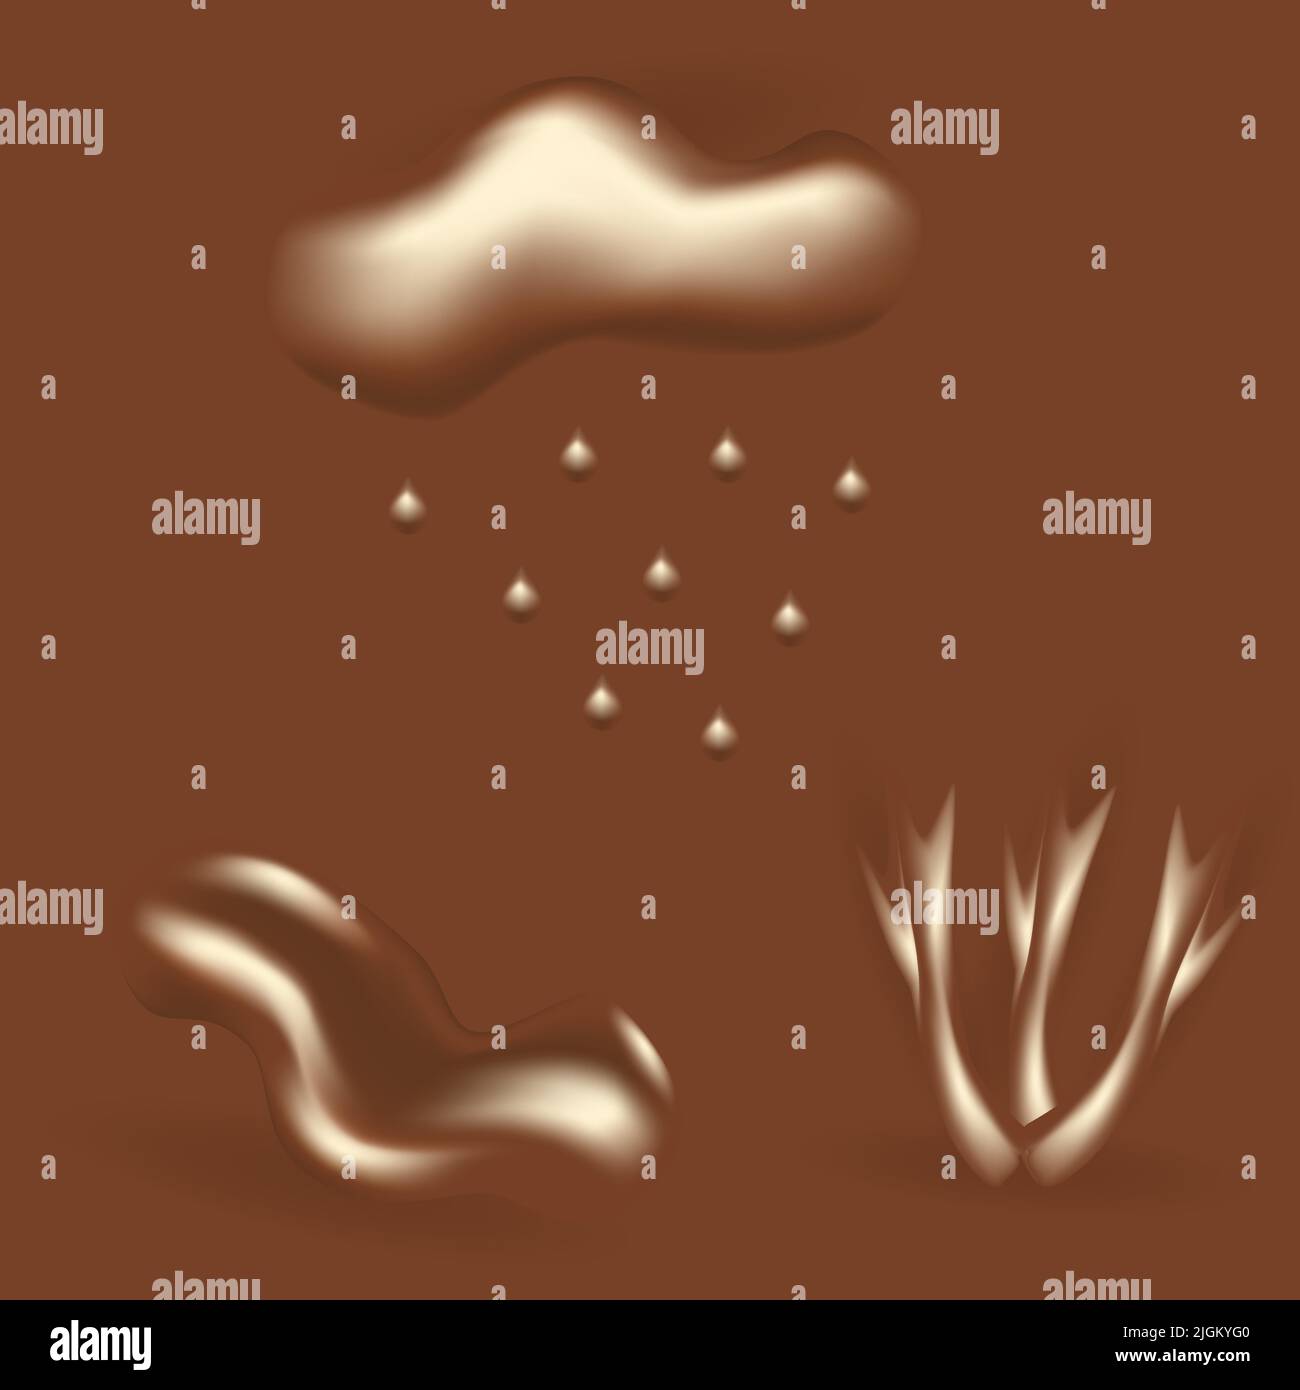 Un ensemble d'éléments graphiques abstraits et réalistes dans des teintes de chocolat tendance, tels que le nuage, les gouttes de pluie, le flaque, les gouttes, vagues. Illustration de Vector 3D. Autocollant. Style de vie Illustration de Vecteur